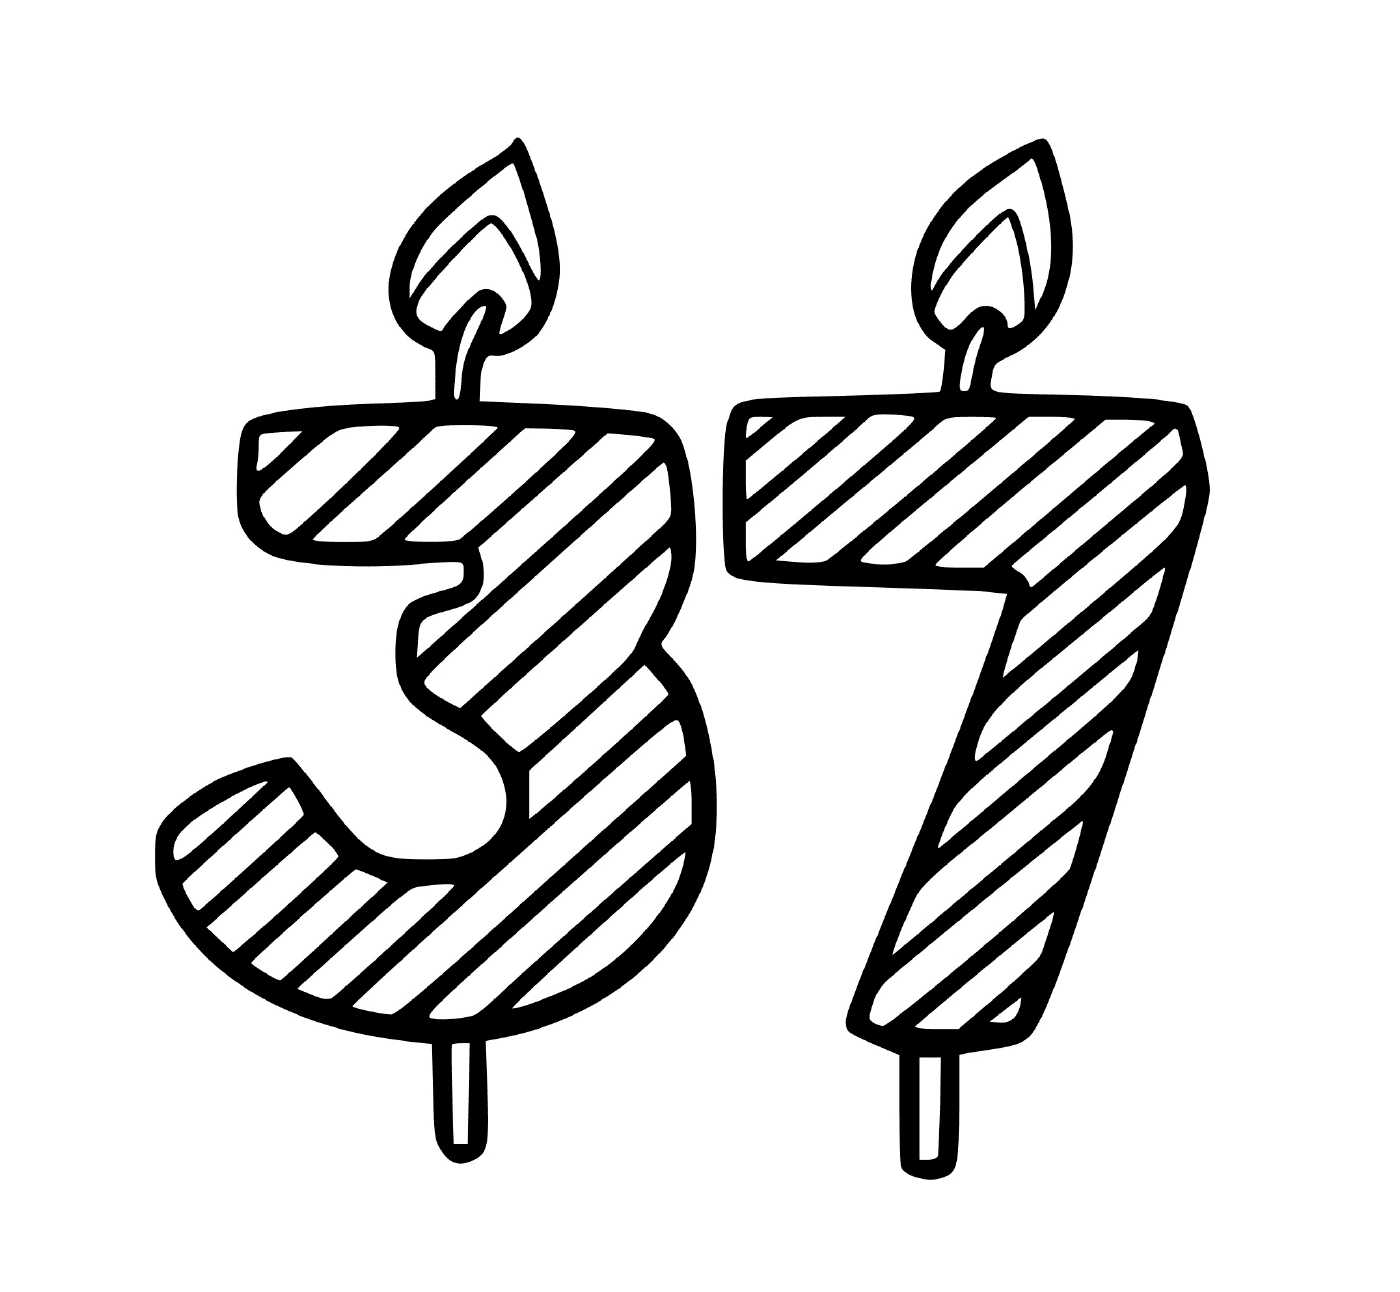  Eine Kerze in Form der Zahl 3 7 